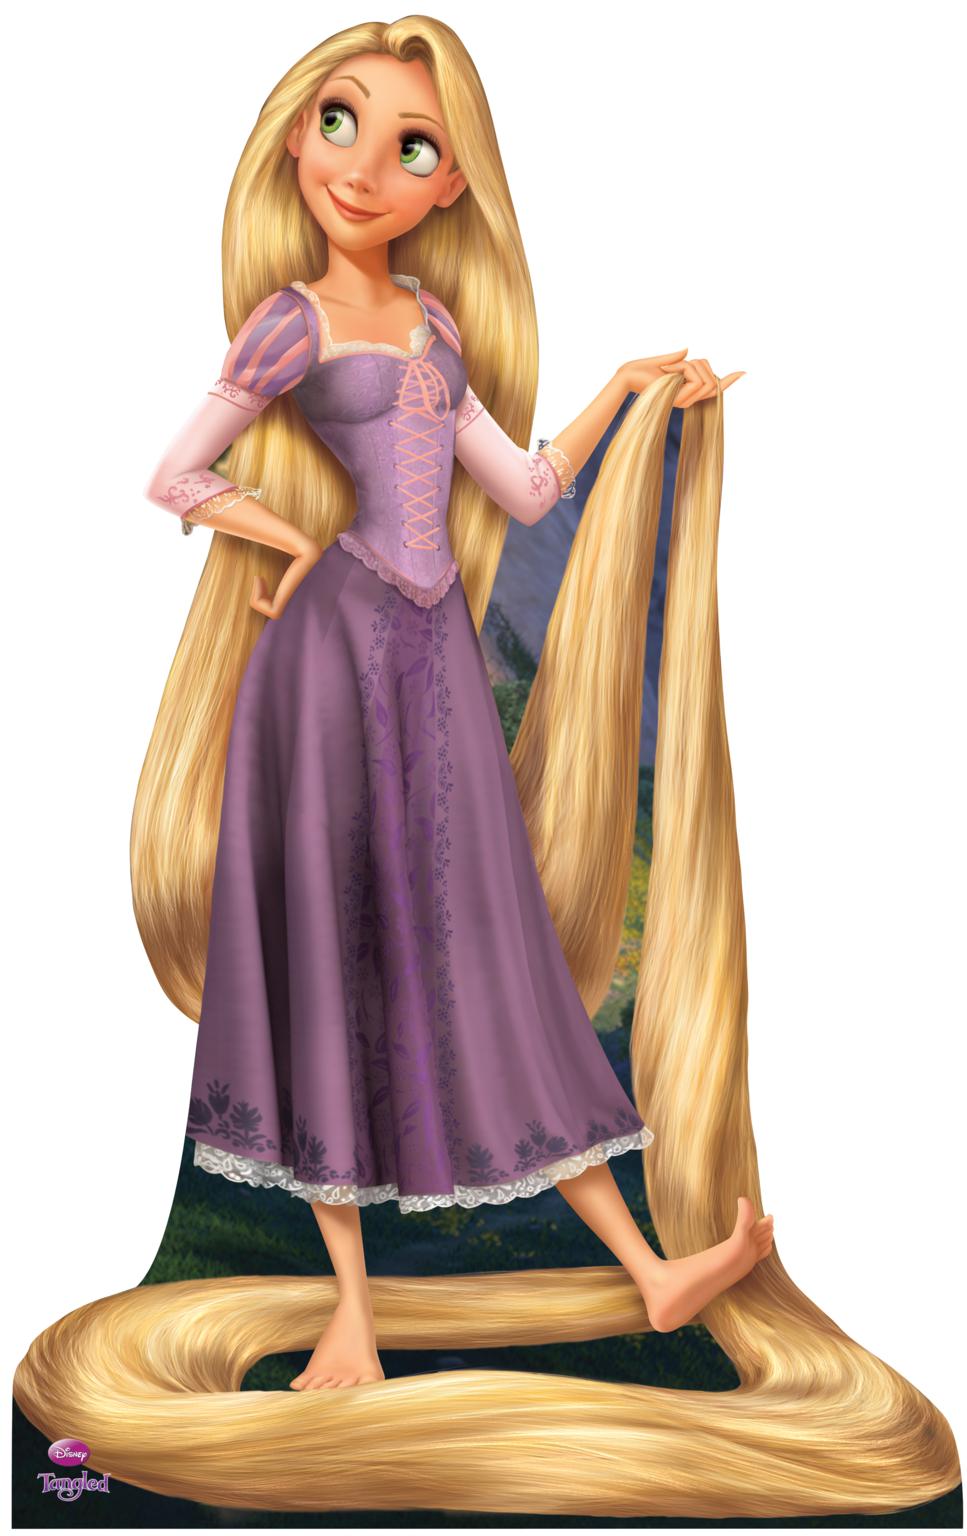 Rapunzel Picture Rapunzel Image Rapunzel Wallpaper